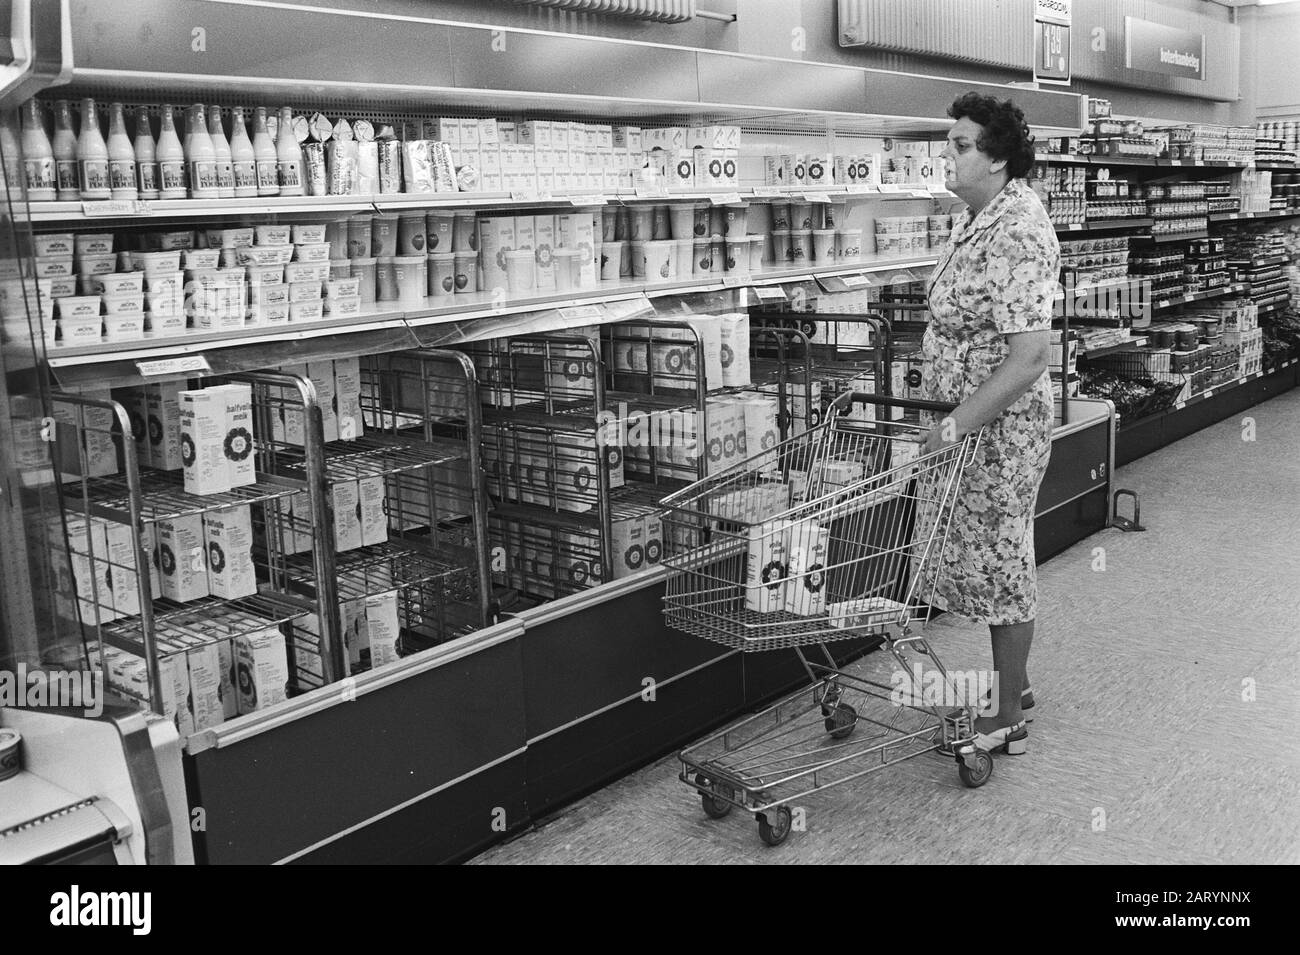 Kostenloser Milchpreis kostenloser Milchpreis, Supermarkt (Milchabteilung) Datum: 2. September 1980 Stichwörter: Milchpreise, Supermärkte Stockfoto